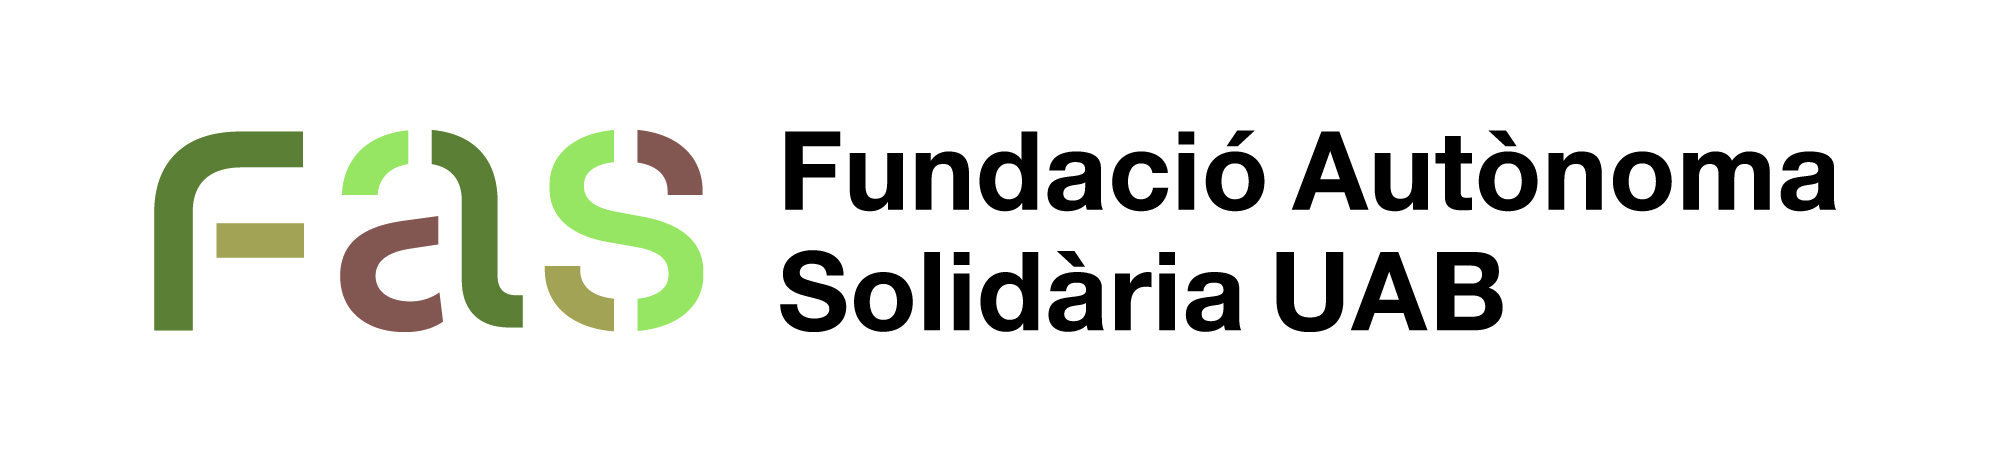 Logotip Fundació Autònoma Solidària